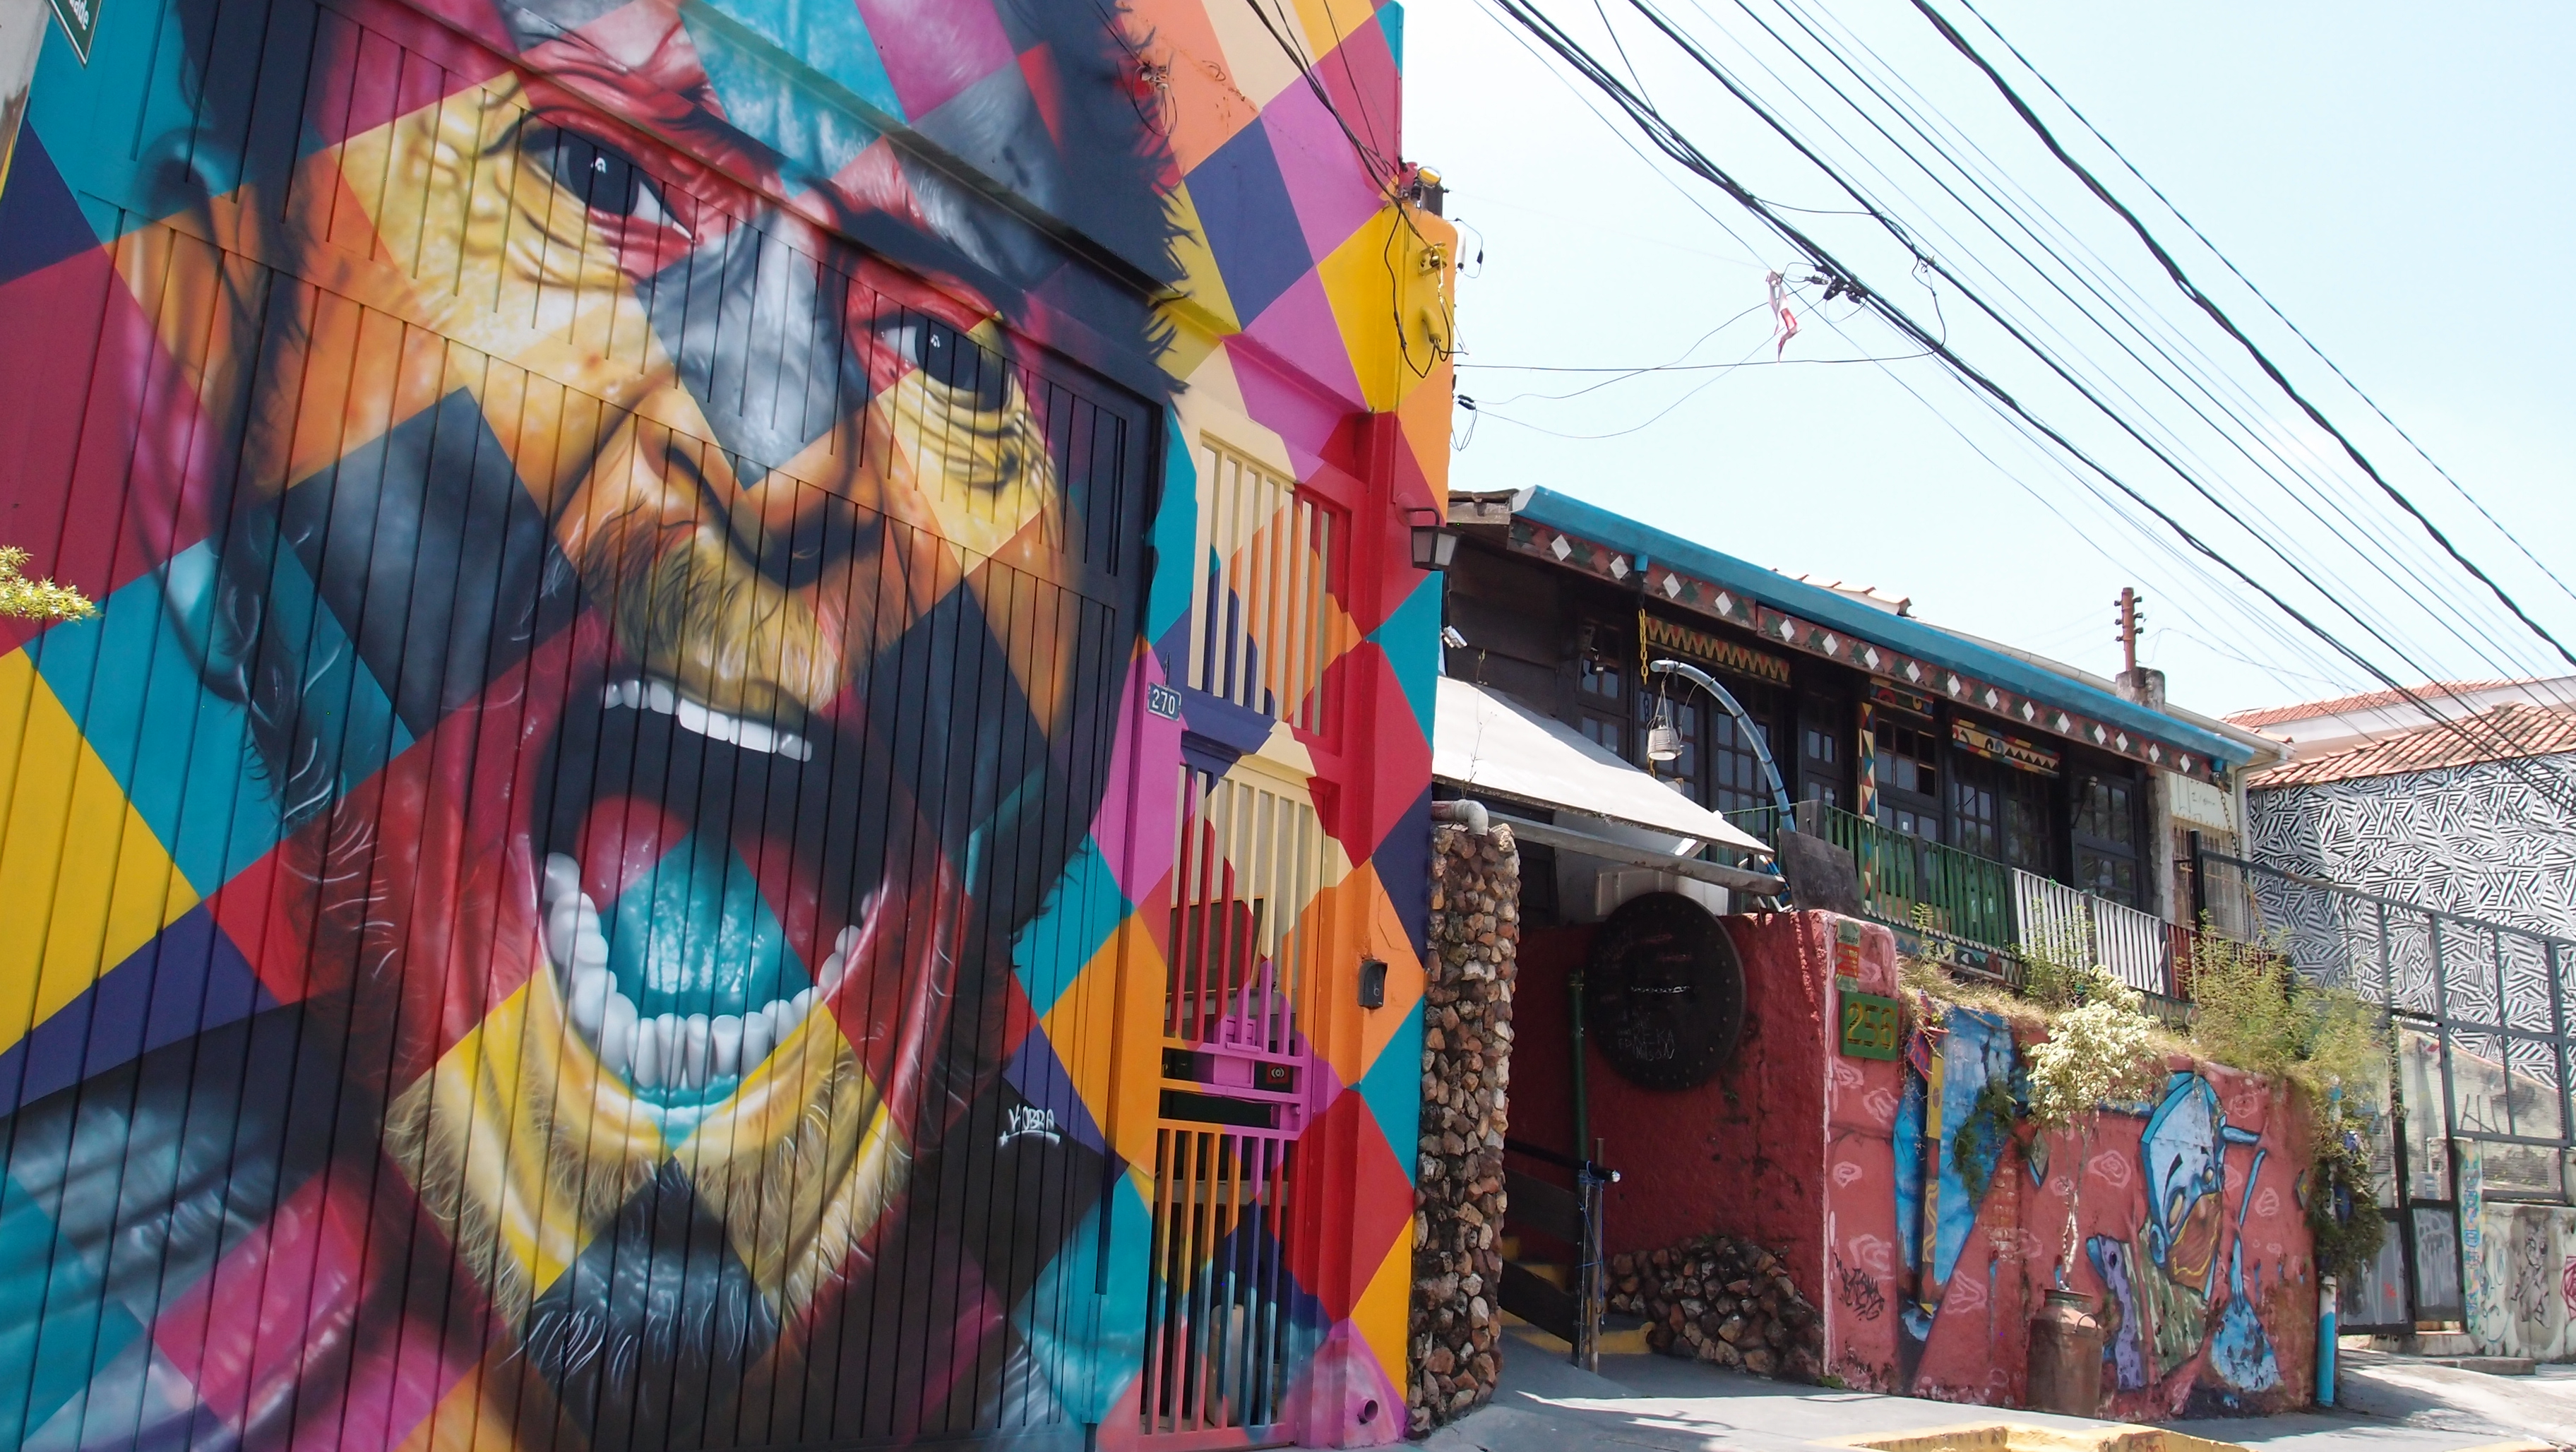 Buildings, foule démesurée, street art : bienvenue à Sao Paulo